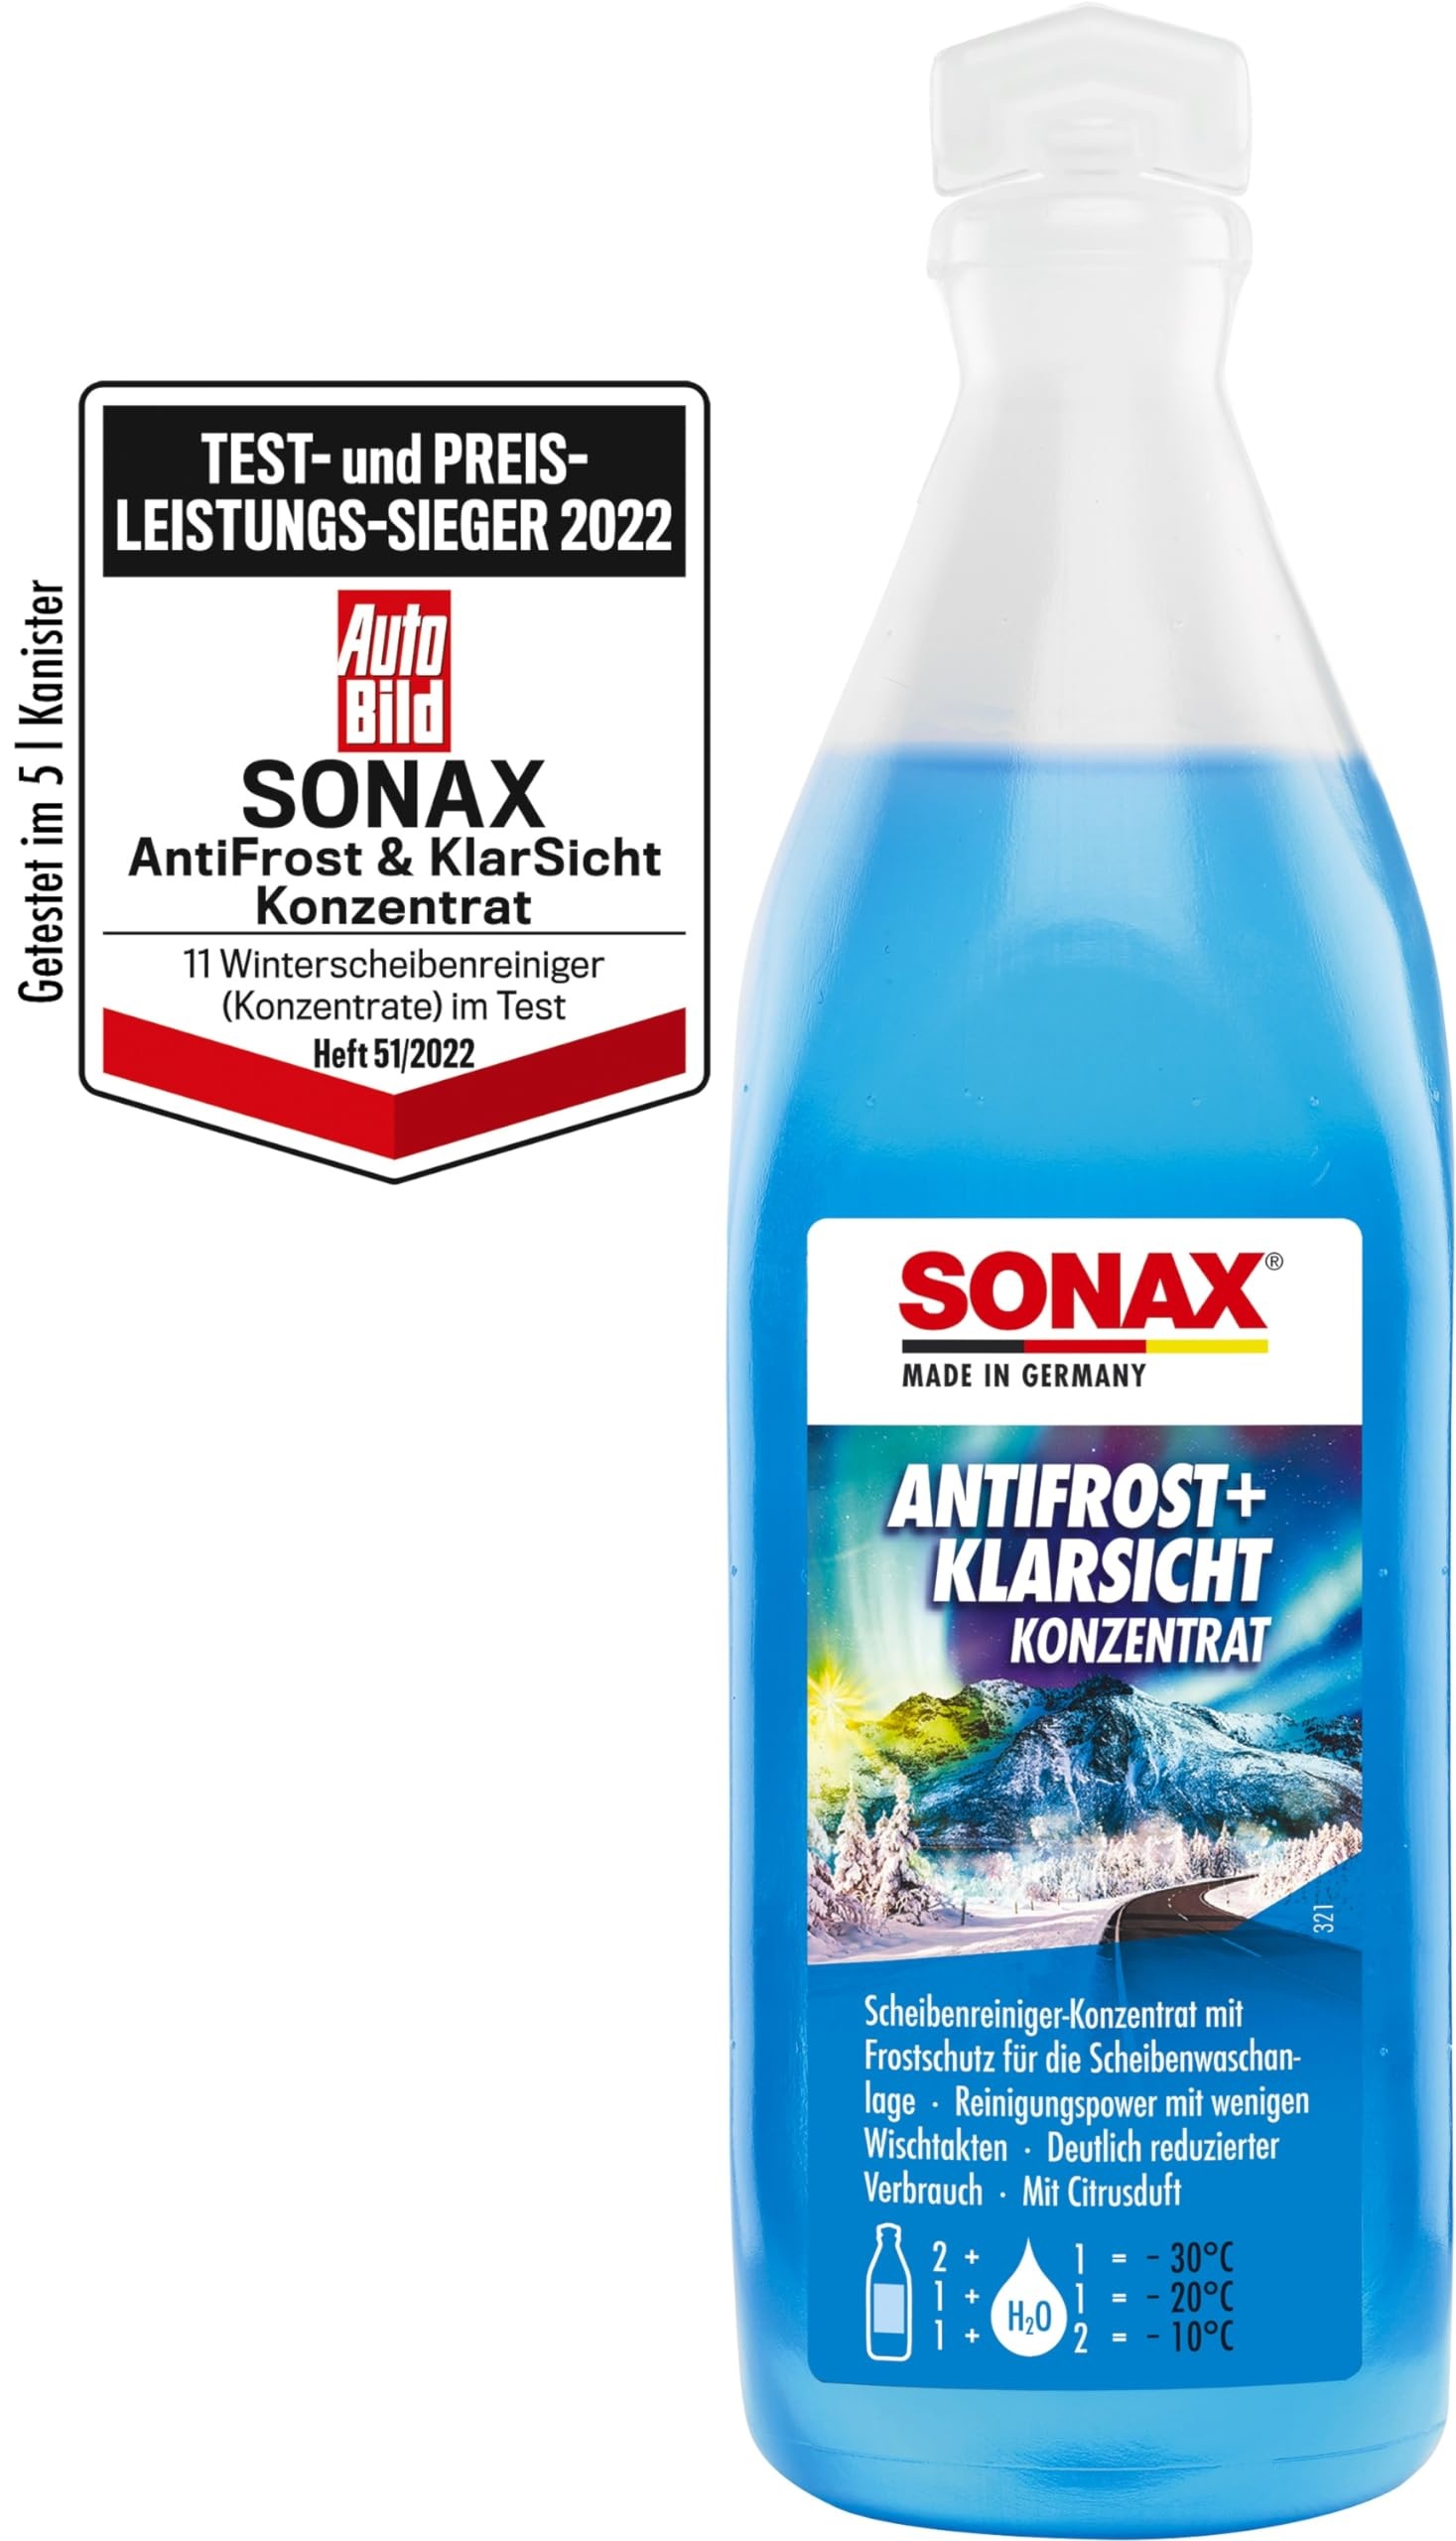 sonax antifrost und klarsicht